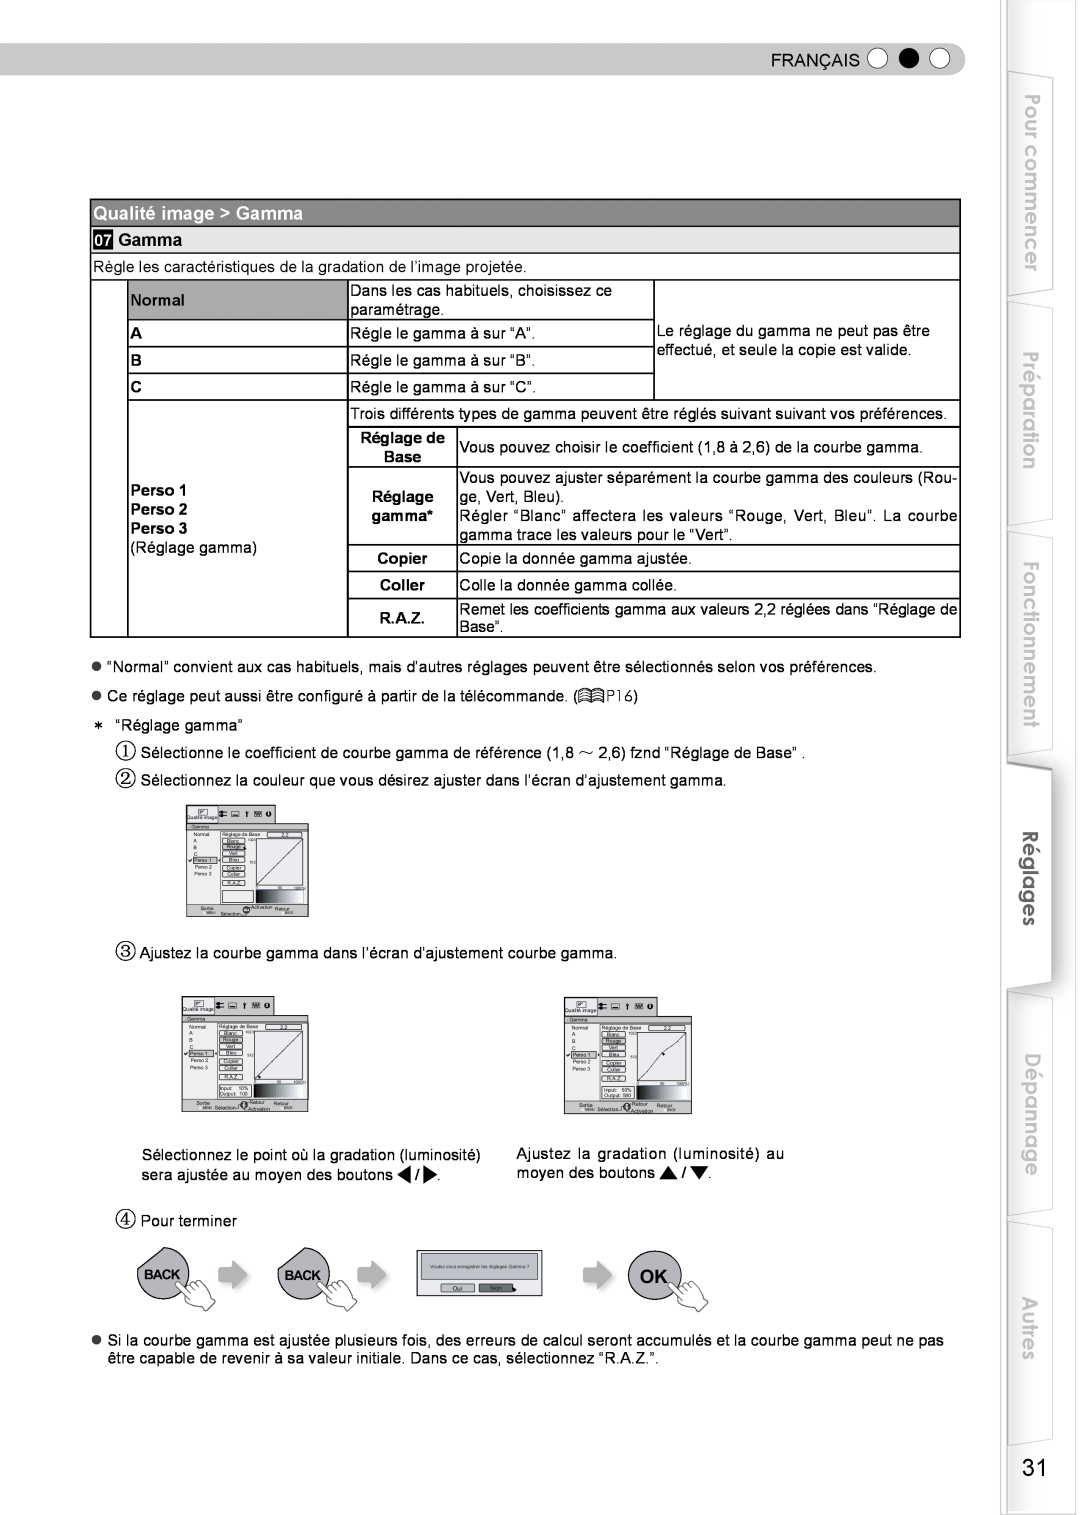 JVC DLA-HD350 manual Pour commencer Préparation Fonctionnement, Réglages, Dépannage Autres, Qualité image Gamma, Français 